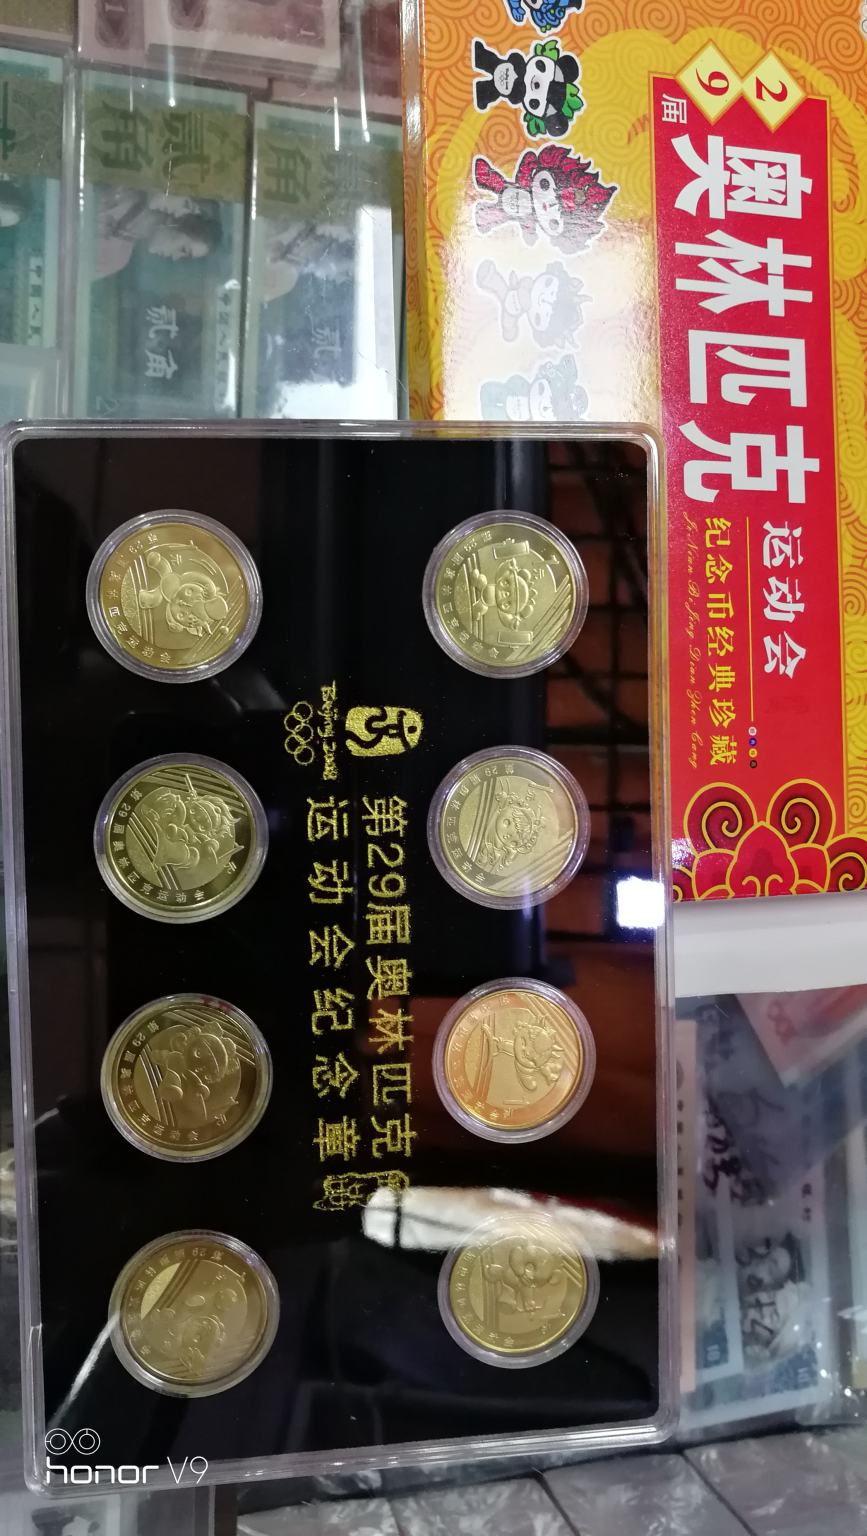 北京2008年举办奥运会,中国人民银行发行的纪念币